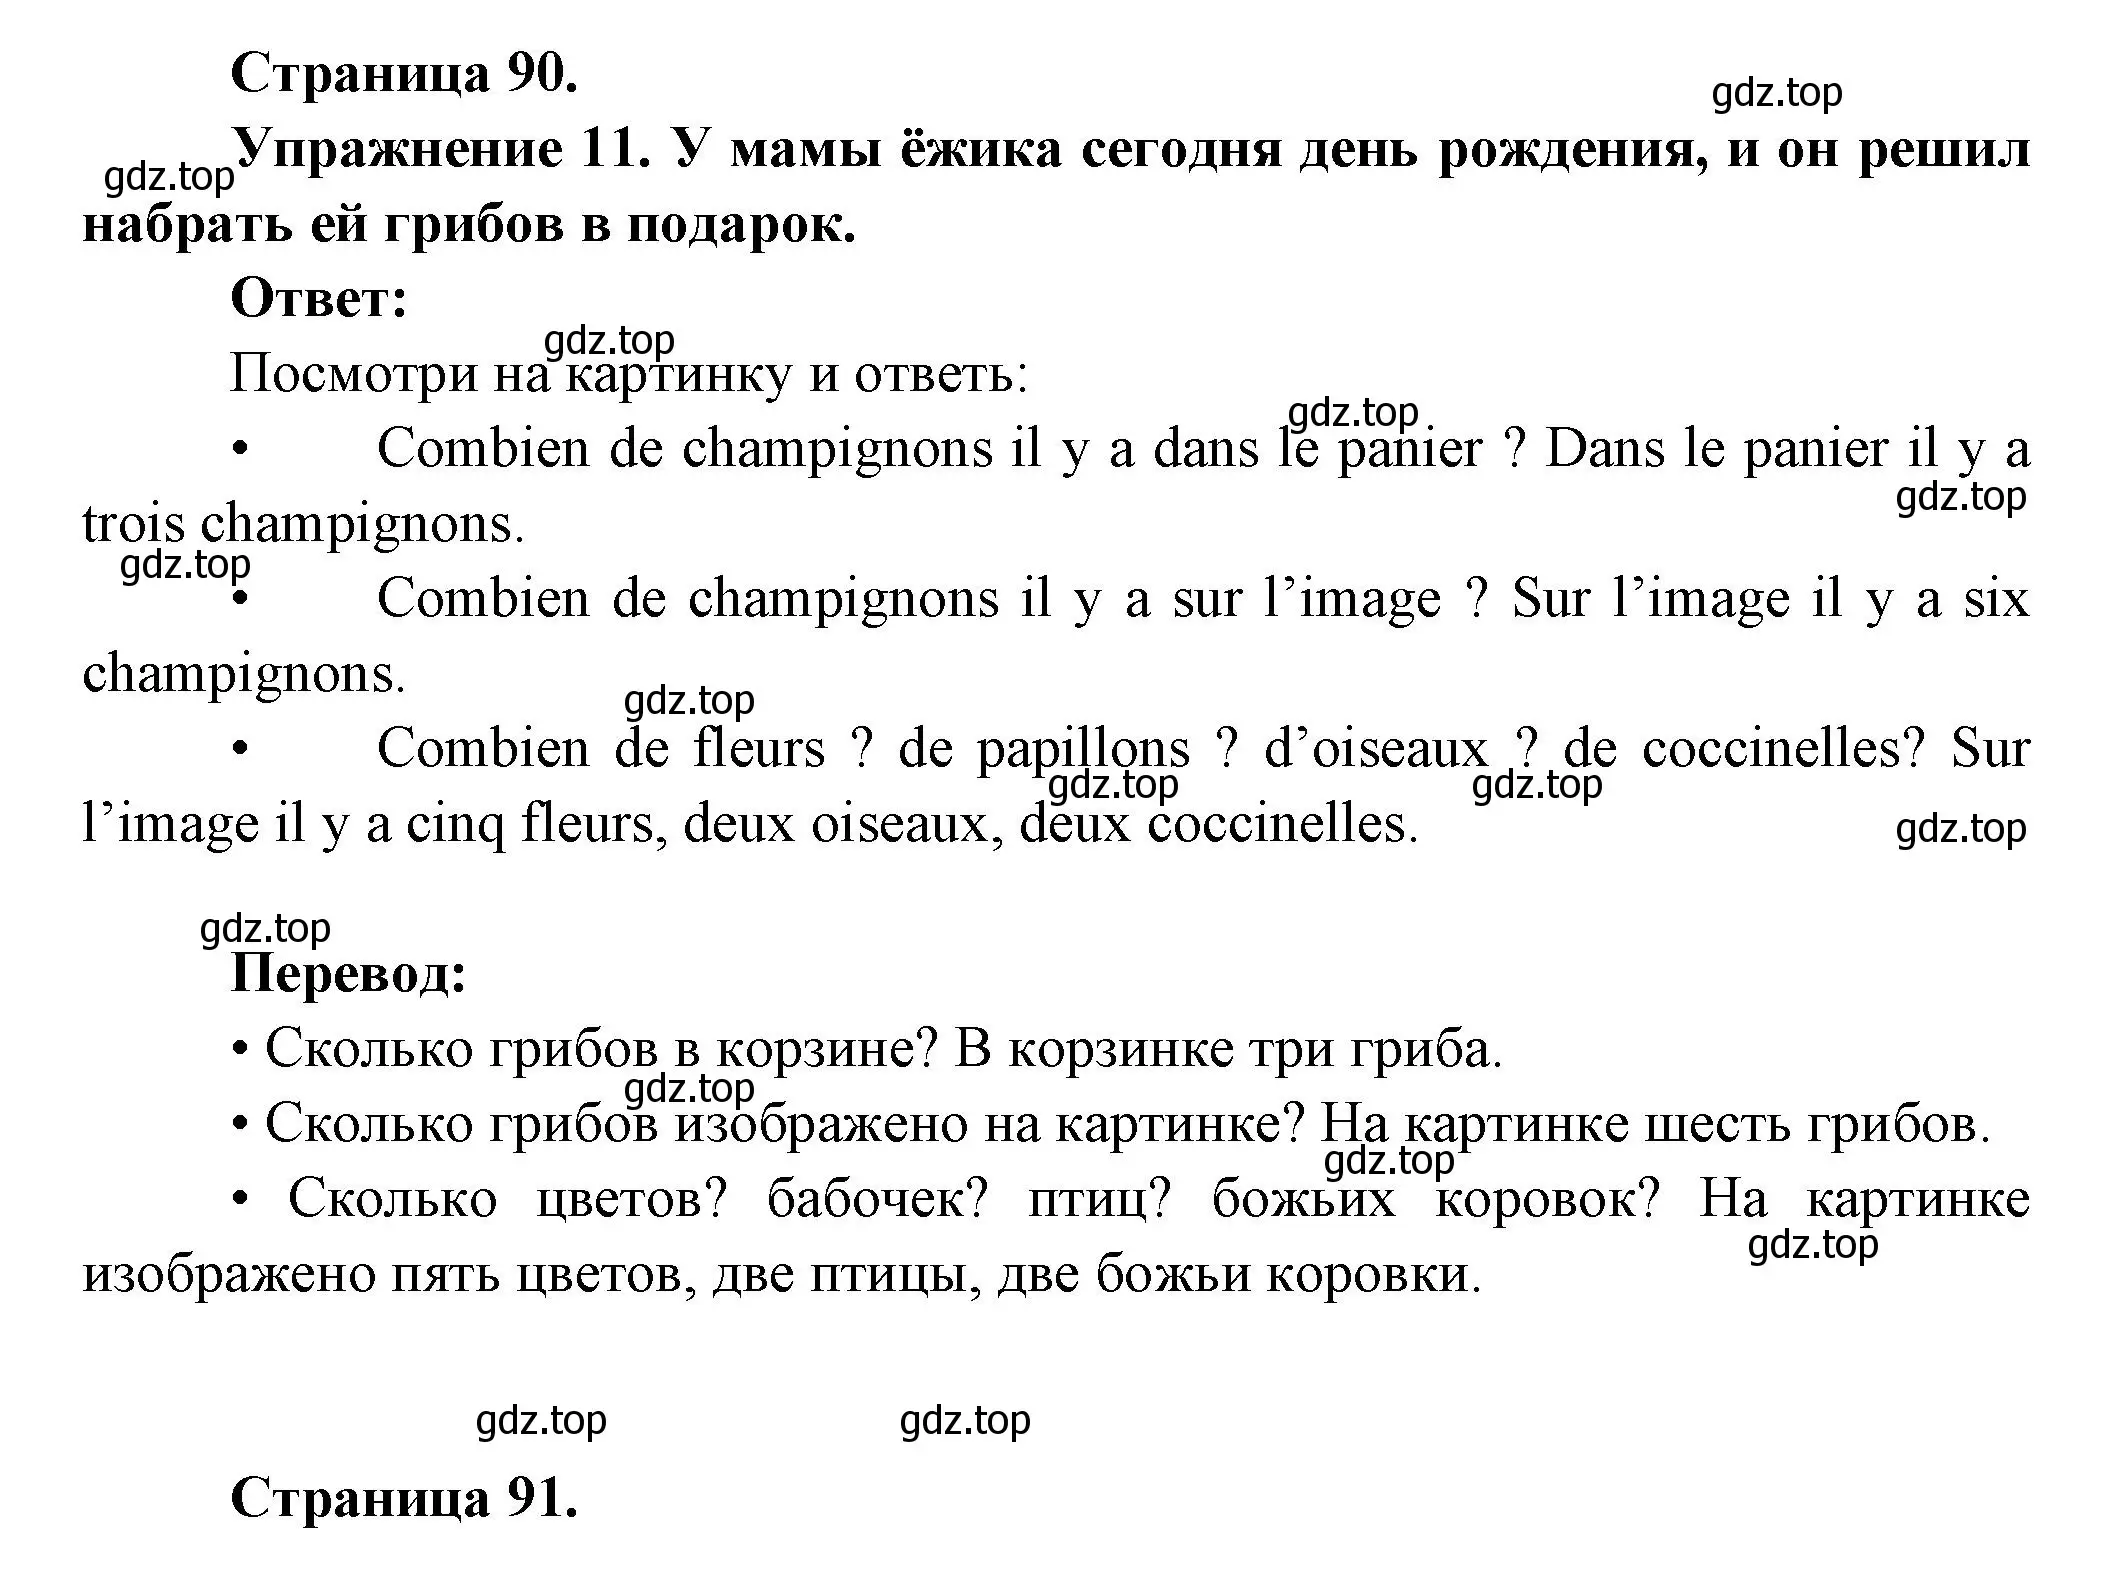 Решение номер 11 (страница 90) гдз по французскому языку 5 класс Береговская, Белосельская, учебник 1 часть